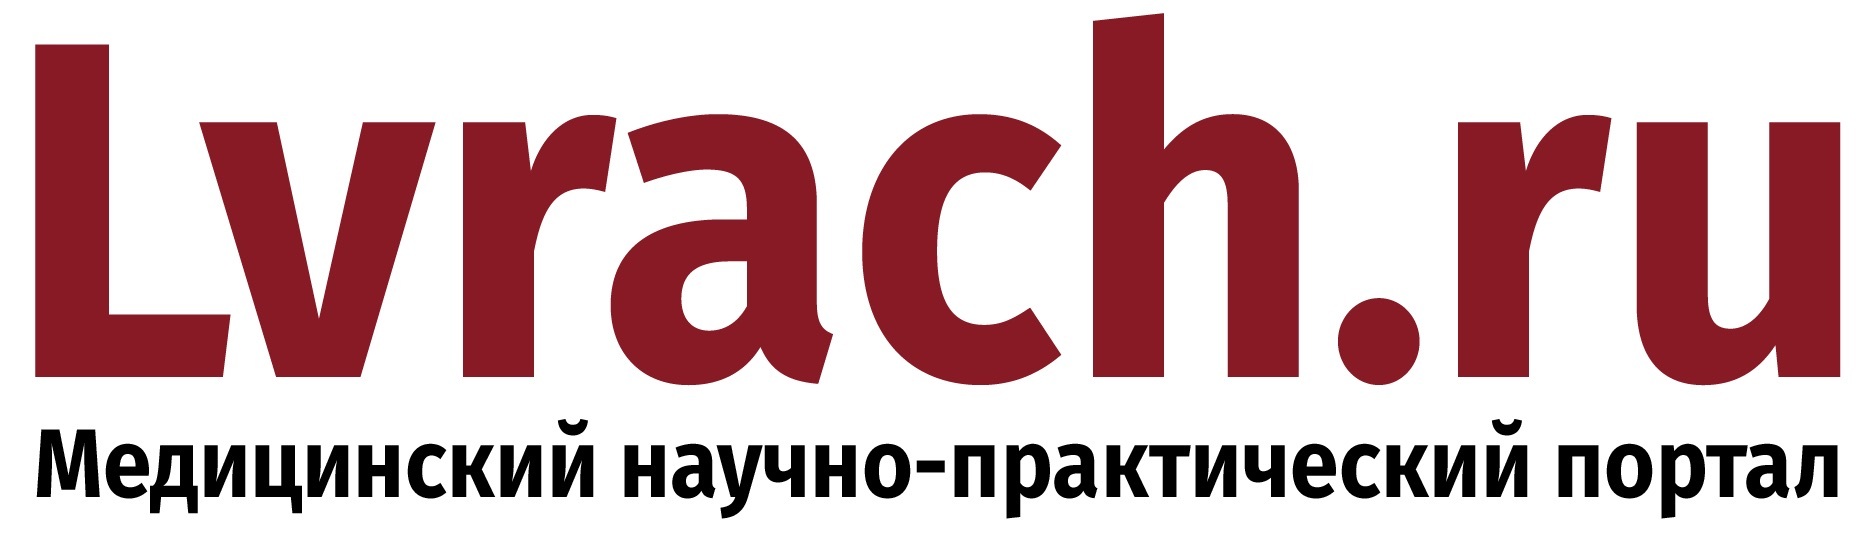 Lvrach.ru – крупнейший профессиональный ресурс для врачей и медицинского сообщества, созданный на базе научно-практического журнала «Лечащий врач». 